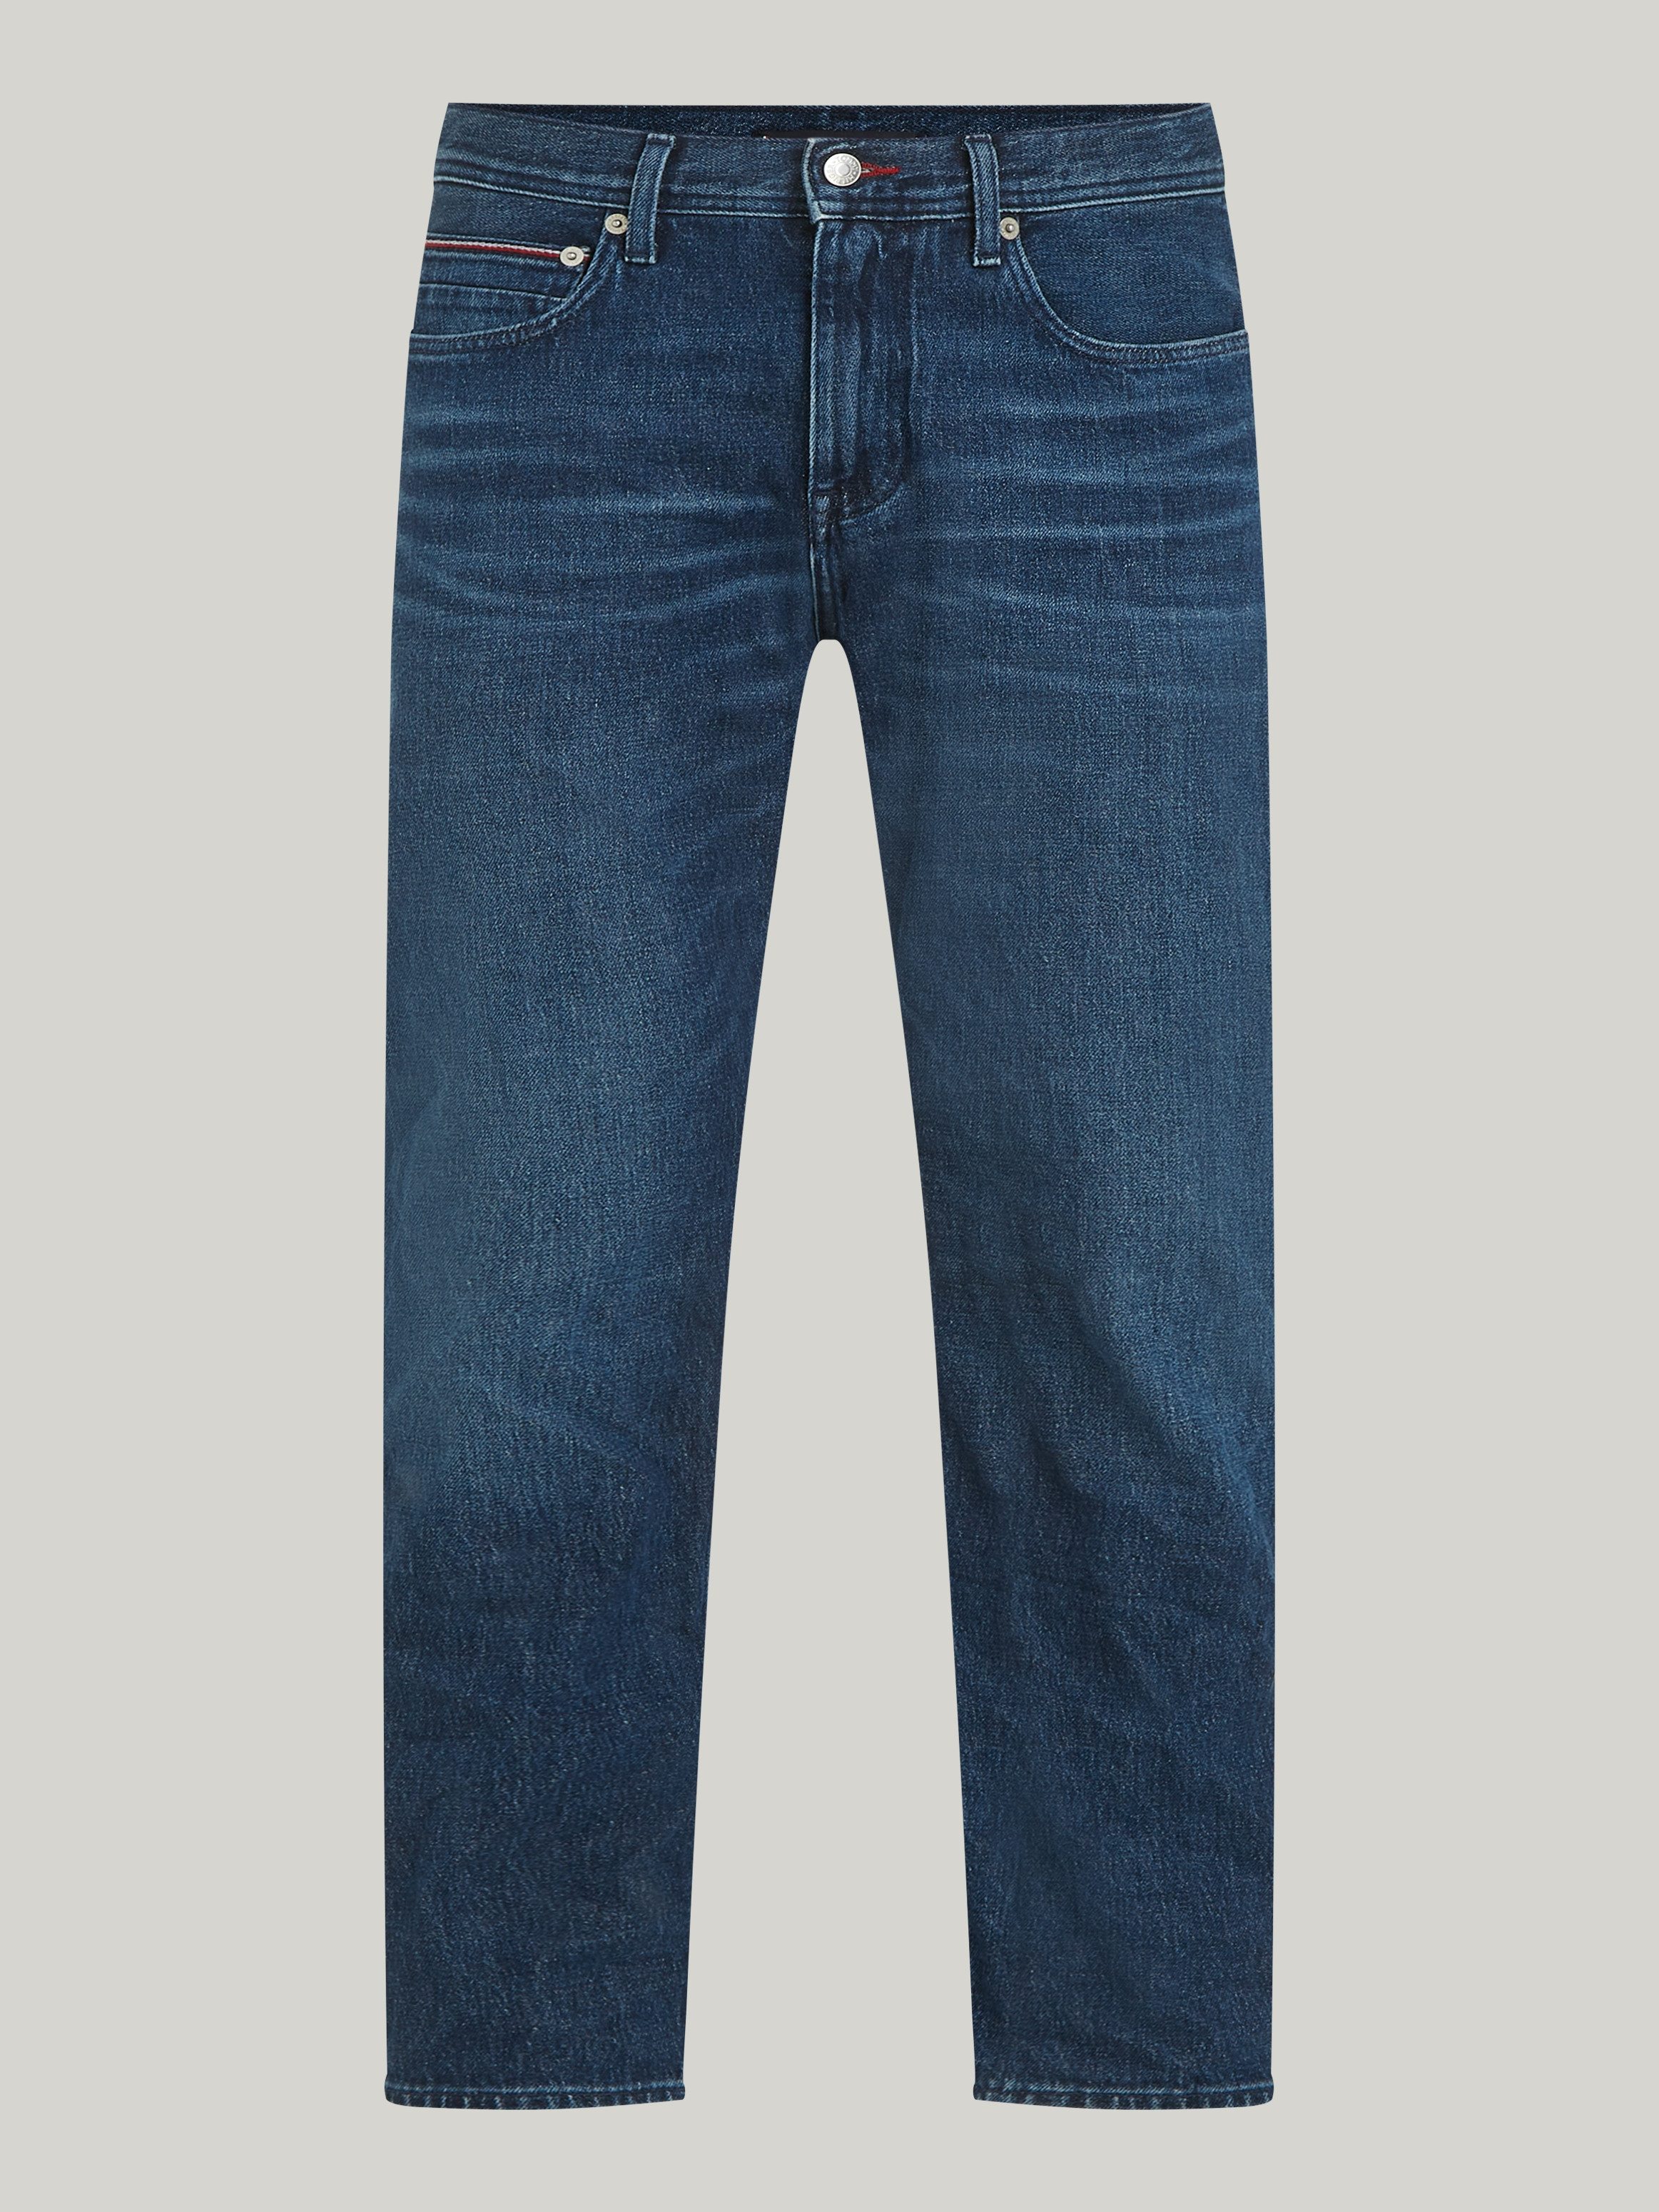 Tommy Hilfiger 5-pocket jeans REGULAR MERCER STR